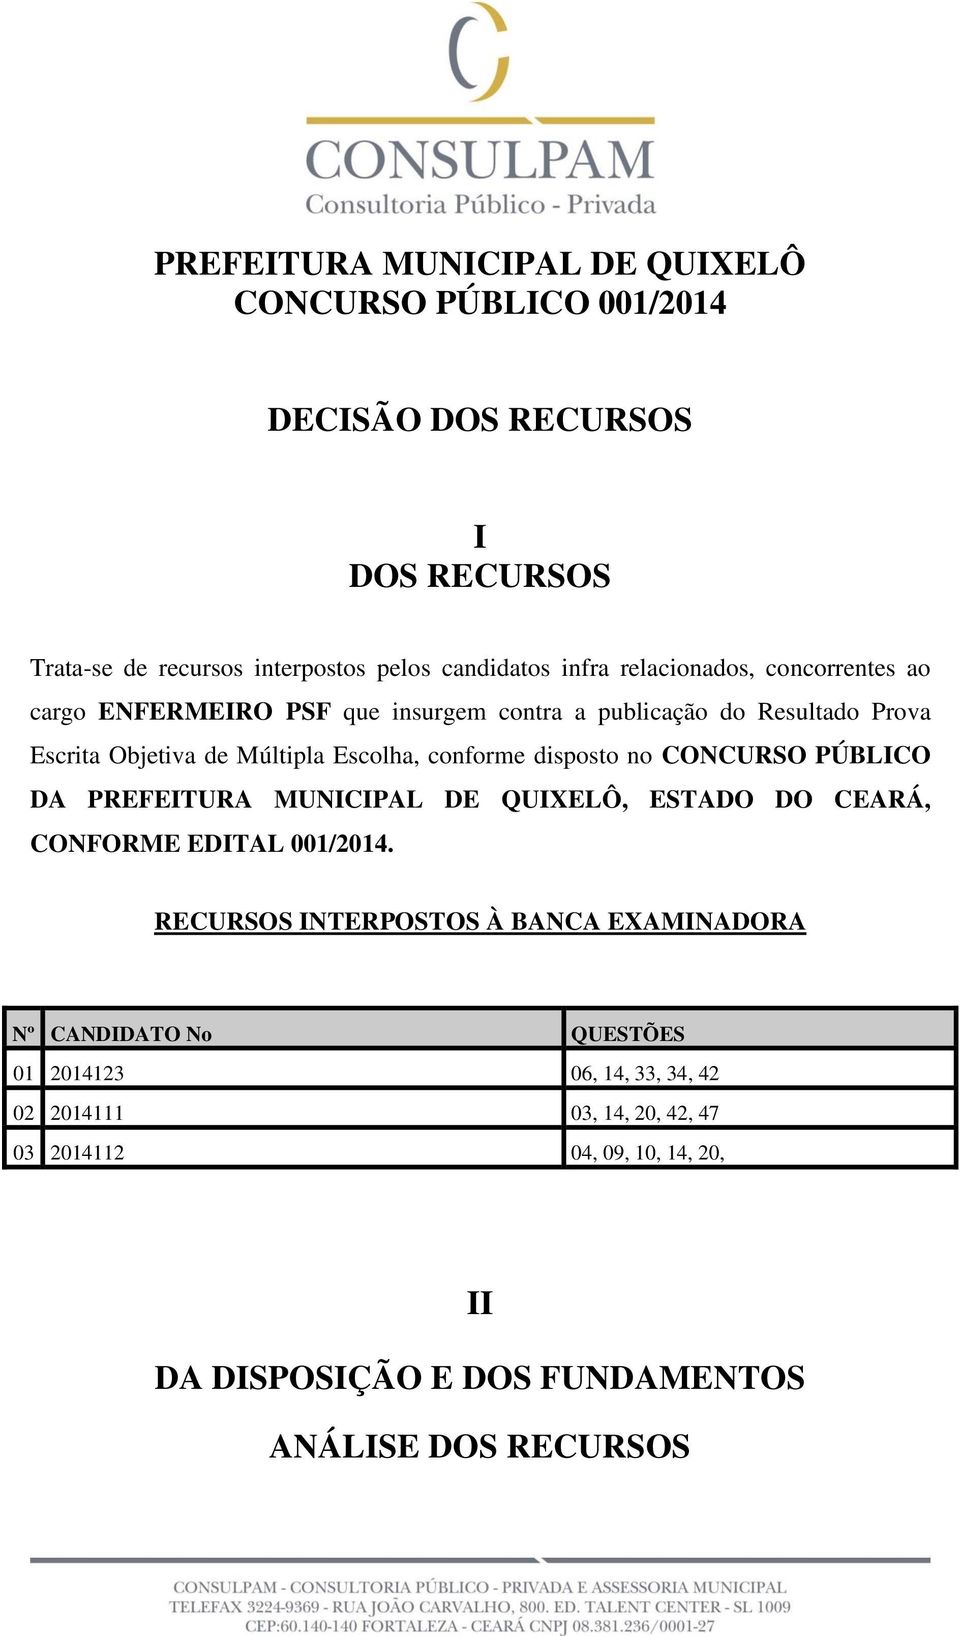 disposto no CONCURSO PÚBLICO DA PREFEITURA MUNICIPAL DE QUIXELÔ, ESTADO DO CEARÁ, CONFORME EDITAL 001/2014.